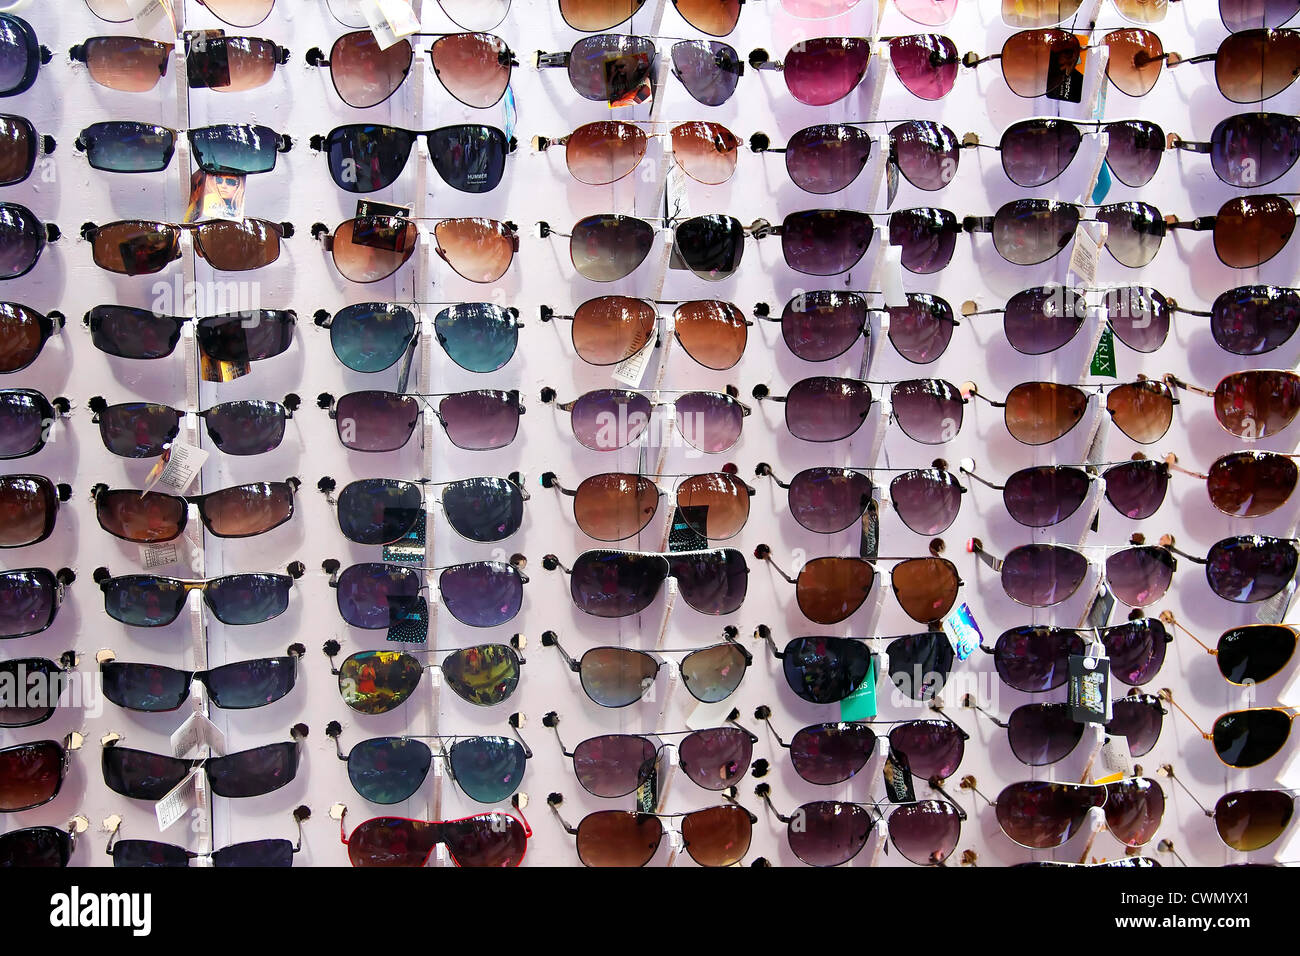 Brille, Shop, Mode, Sonnenbrillen Shop, Brillen, Schaufenster, Design,  Einzelhandel, Verschleiß, Glas, Geschäft, Optik, Sonnenbrillen  Stockfotografie - Alamy